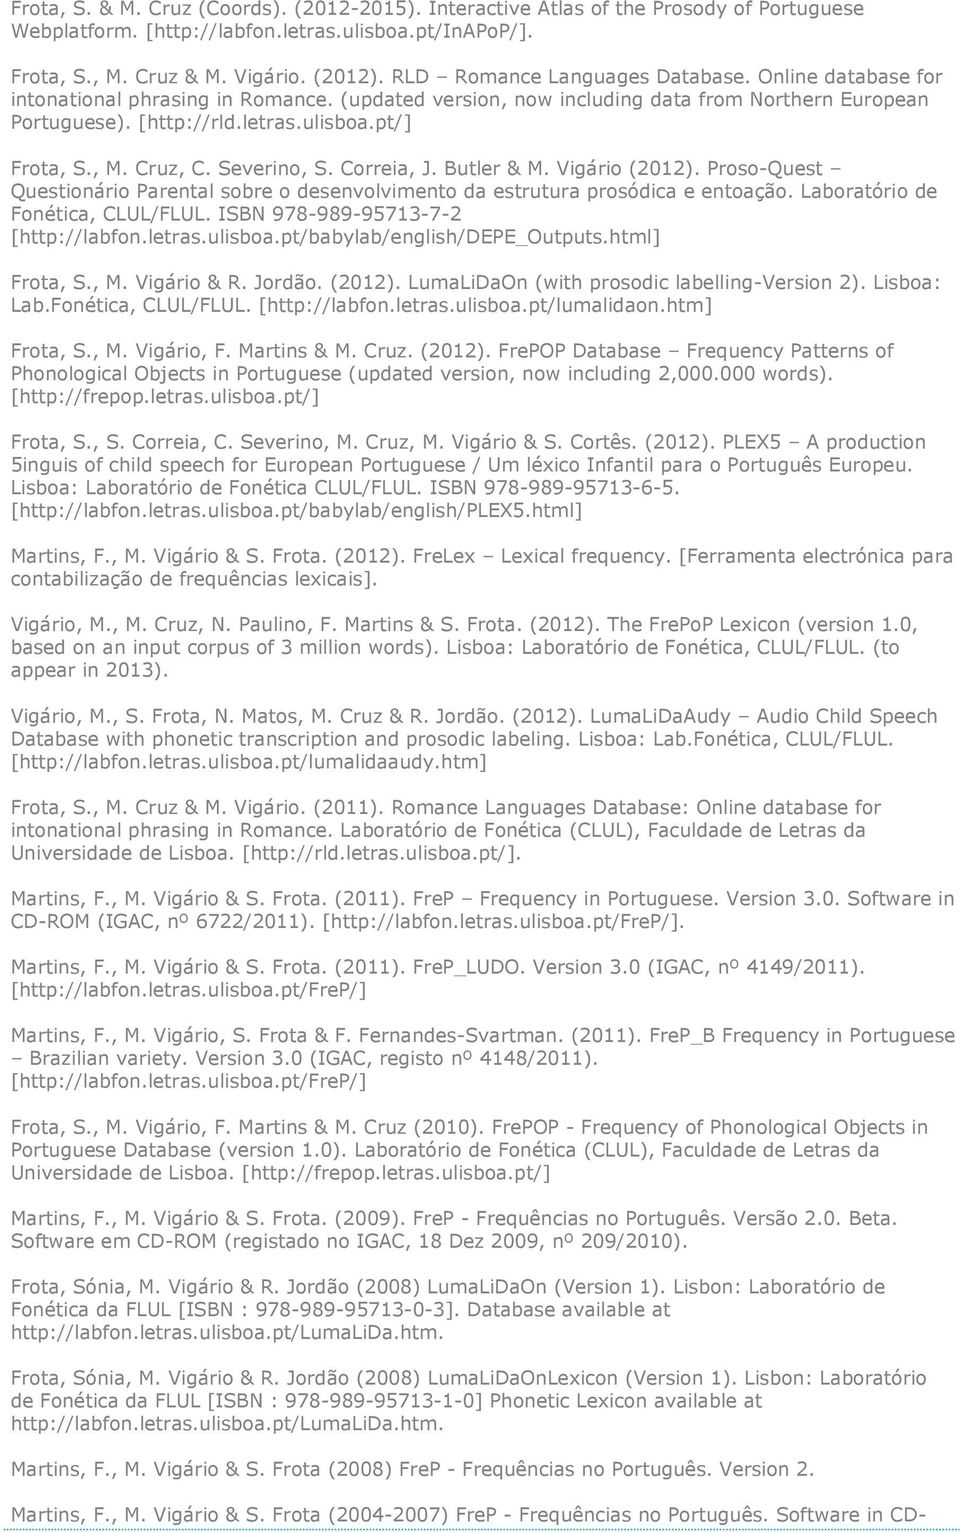 , M. Cruz, C. Severino, S. Correia, J. Butler & M. Vigário (2012). Proso-Quest Questionário Parental sobre o desenvolvimento da estrutura prosódica e entoação. Laboratório de Fonética, CLUL/FLUL.